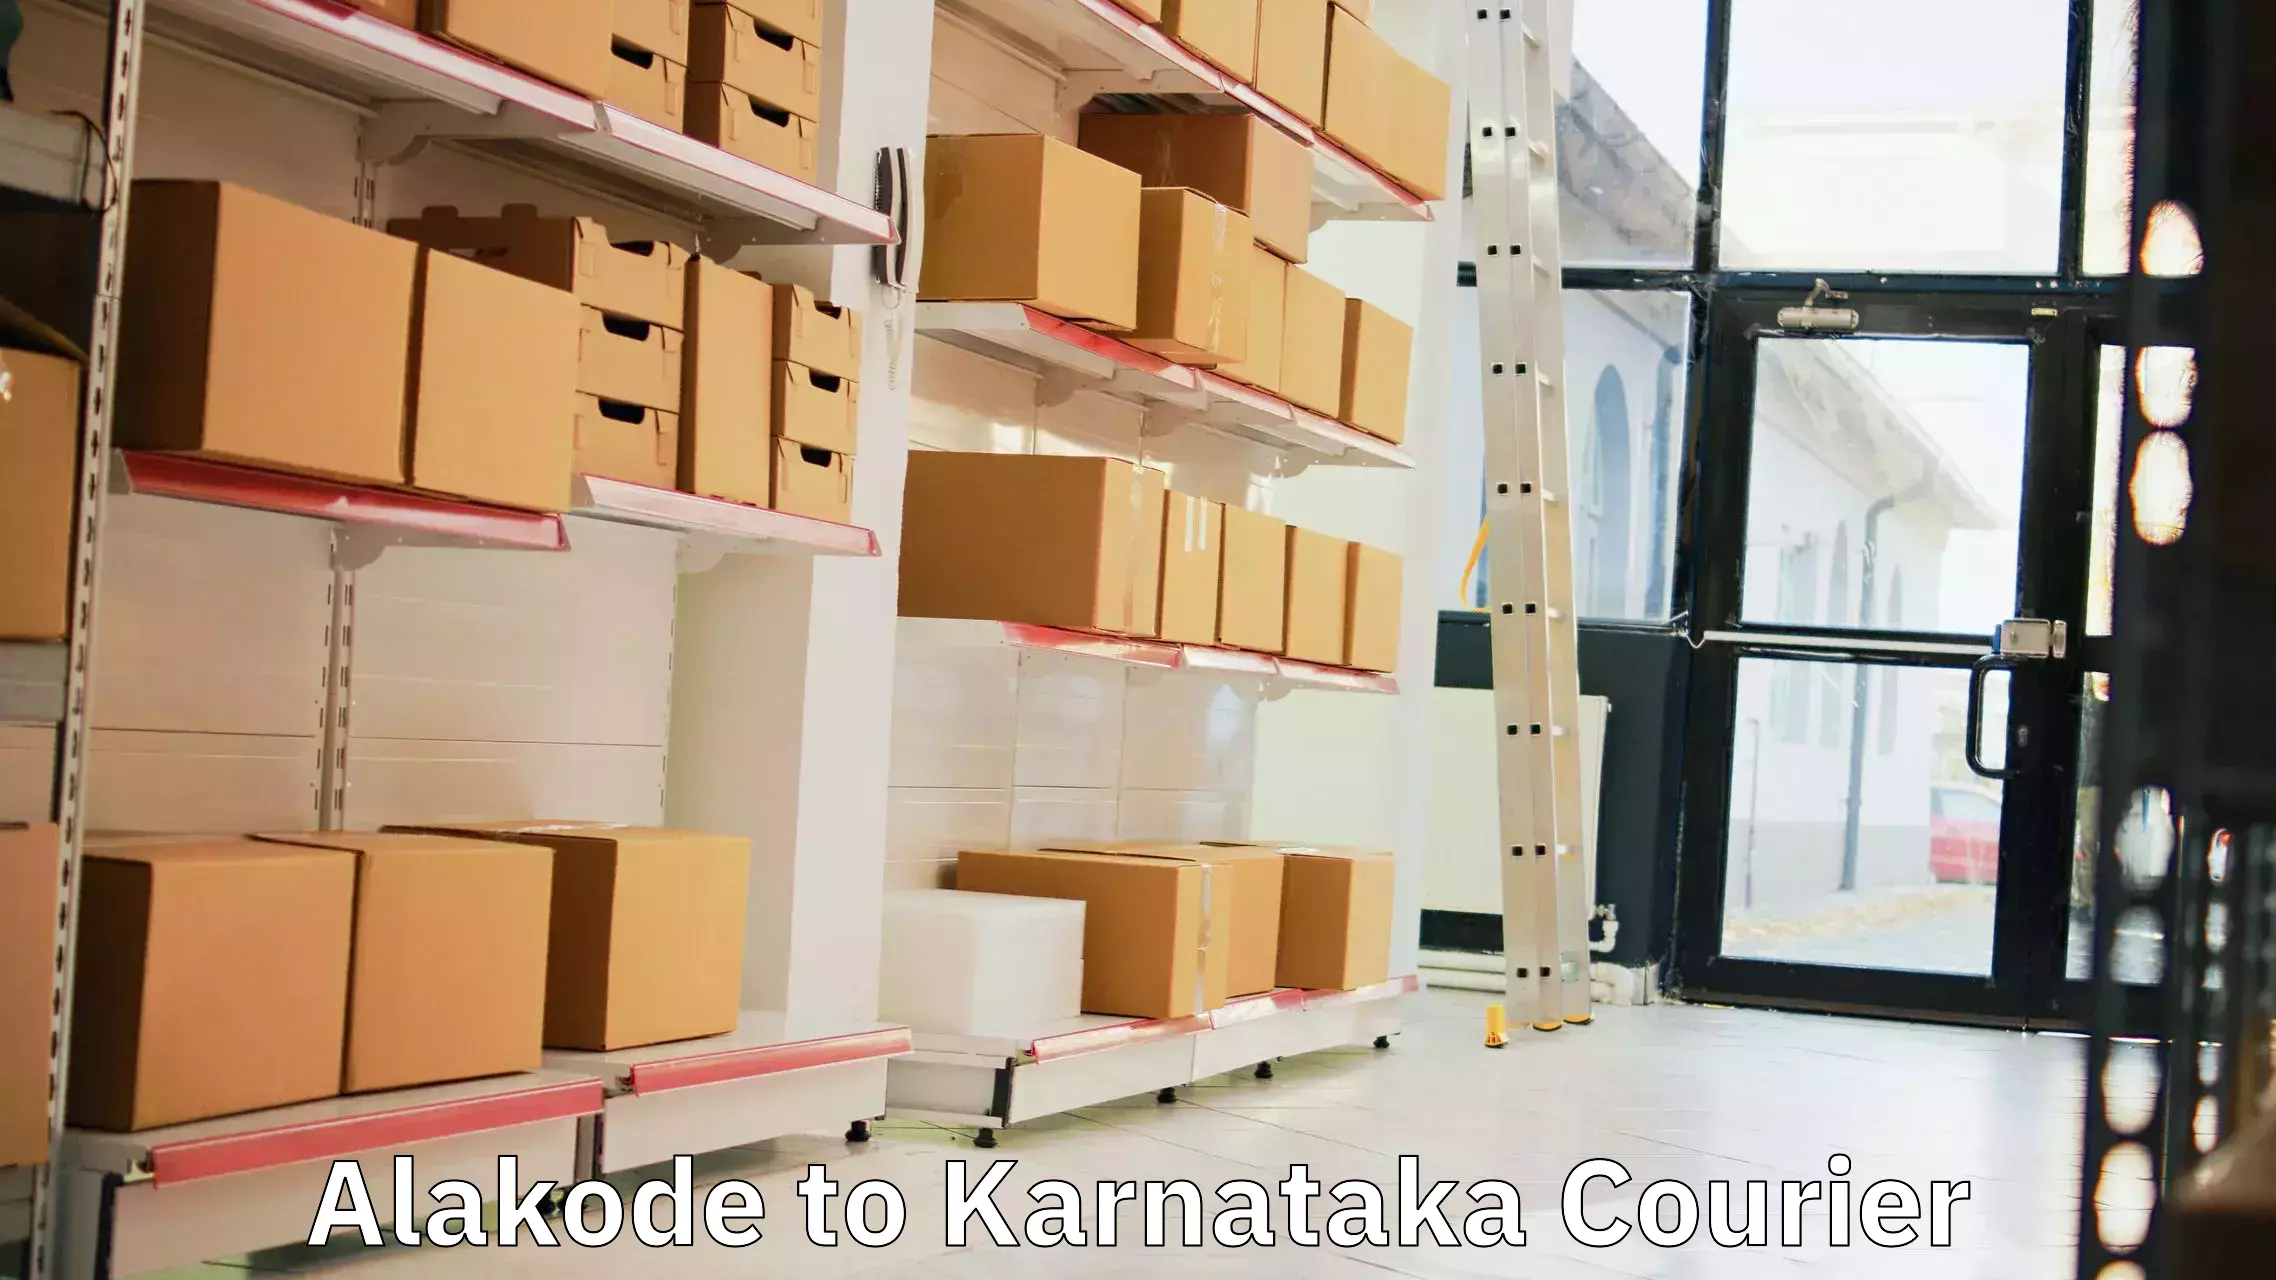 Global delivery options Alakode to Yenepoya Mangalore